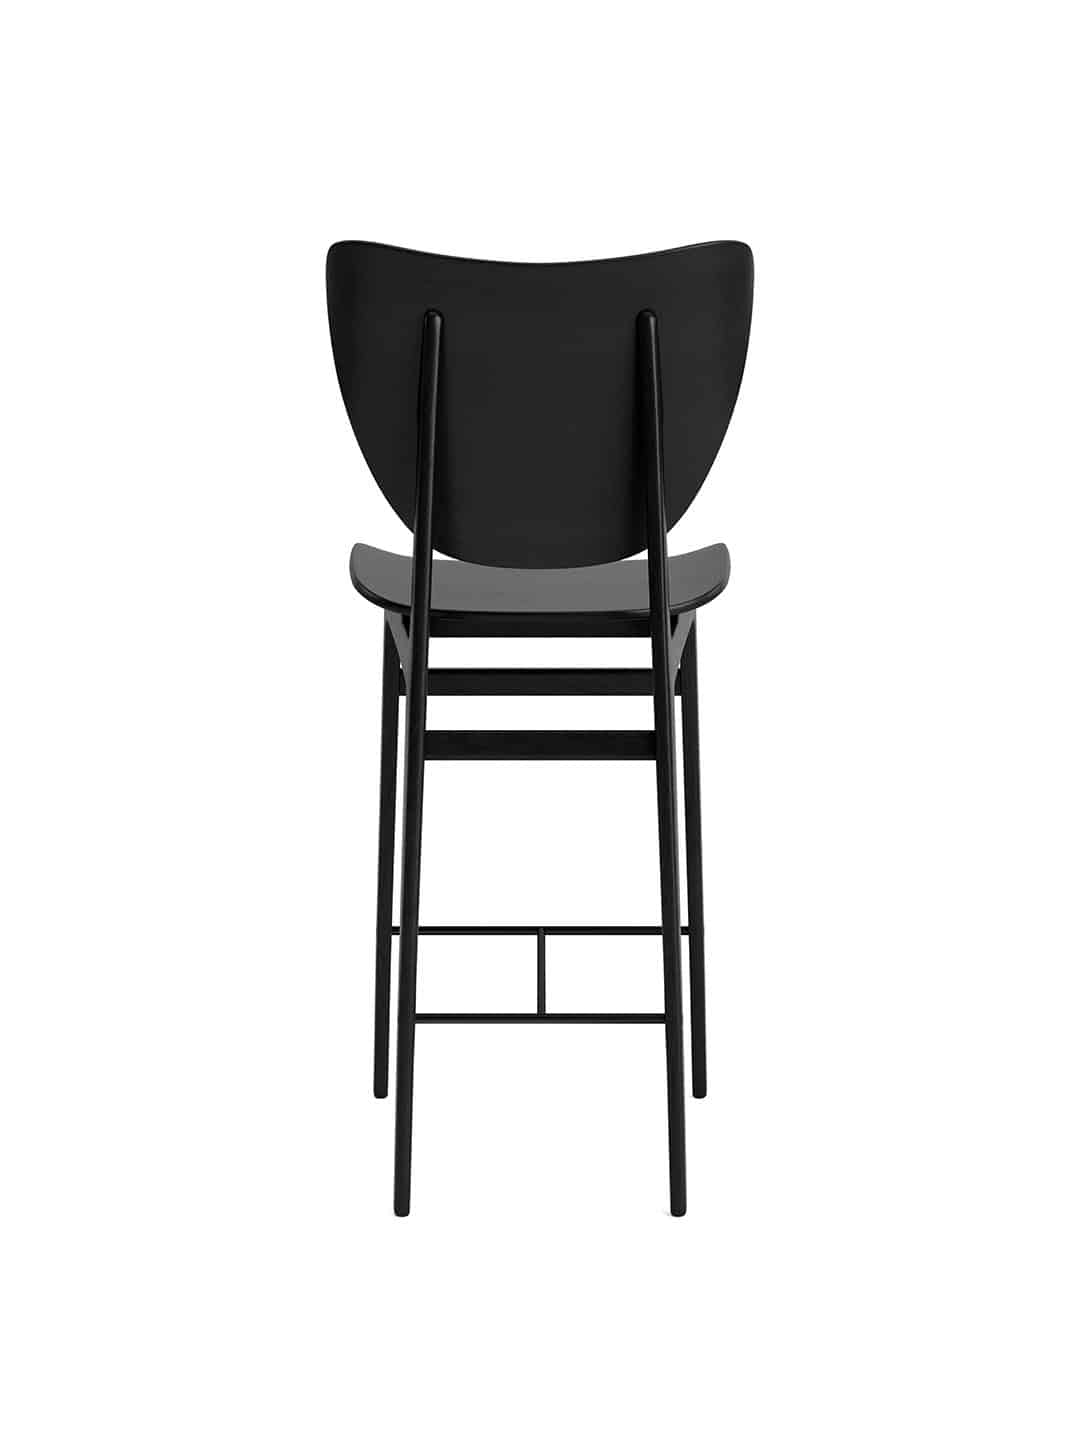 Барный стул NORR11 Elephant — купить по выгодной цене на Нордик Дизайн